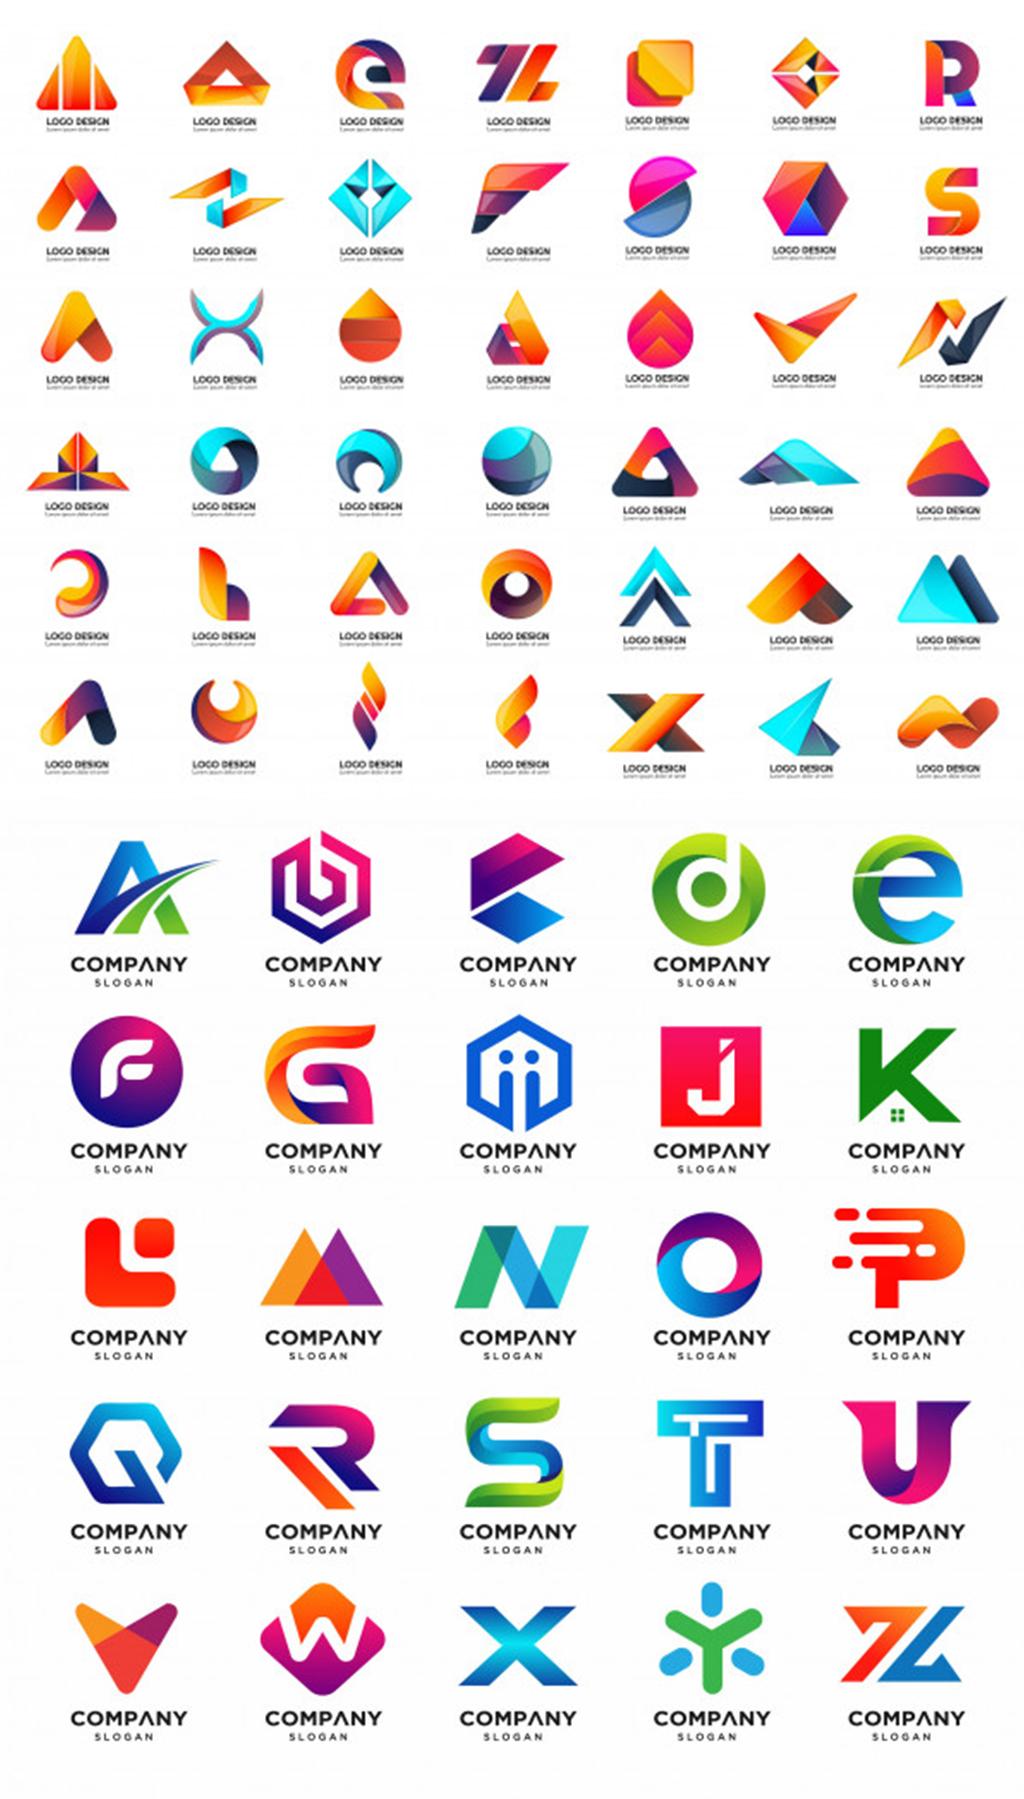 logo-maker-free-logo-designer-logo-creator-app-for-android-apk-download